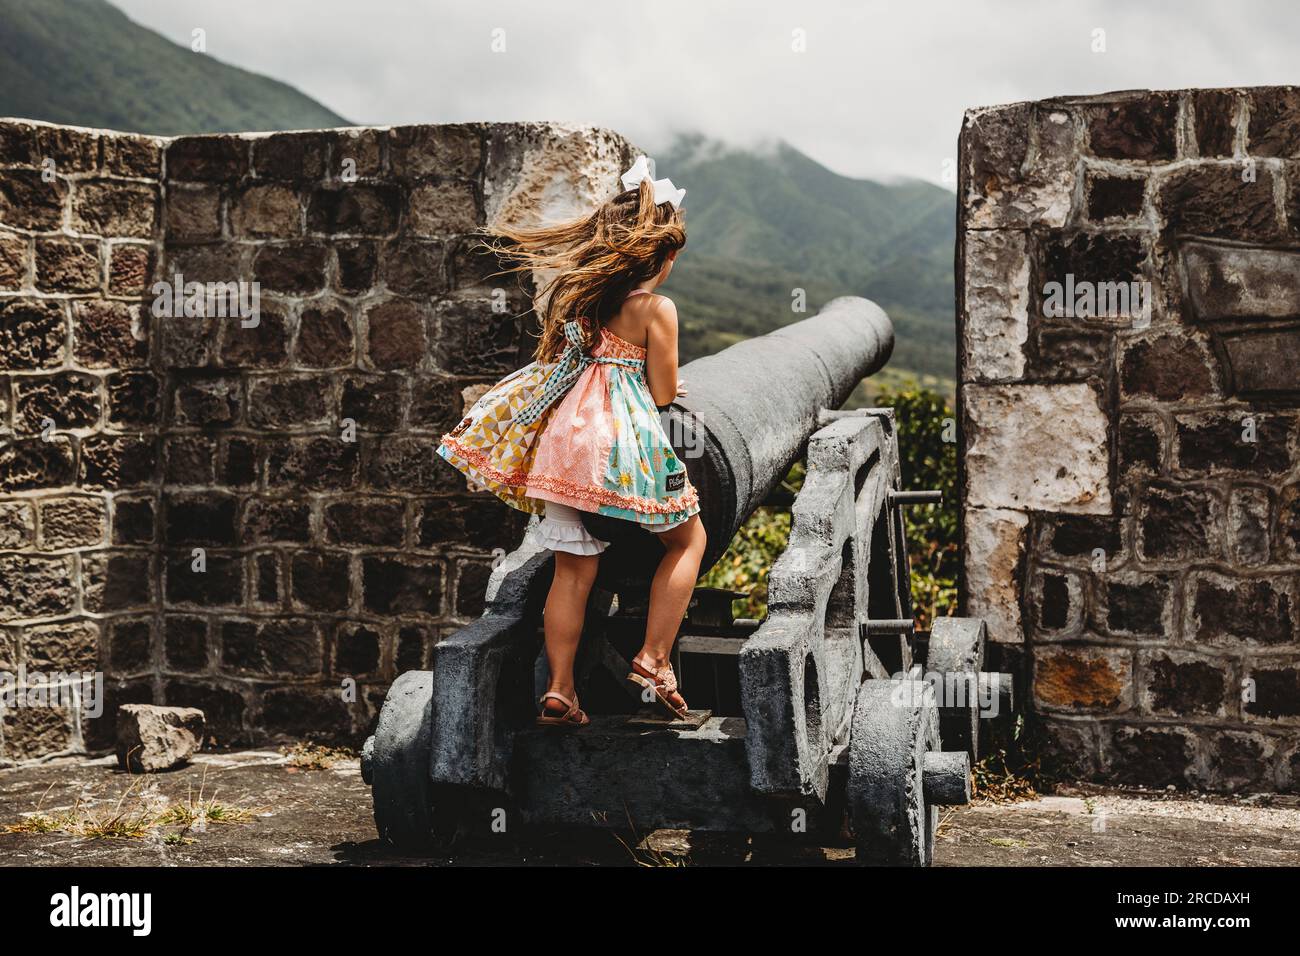 La giovane ragazza gioca nella vecchia fortezza in una fermata del porto delle navi da crociera di St Kitts Island Foto Stock